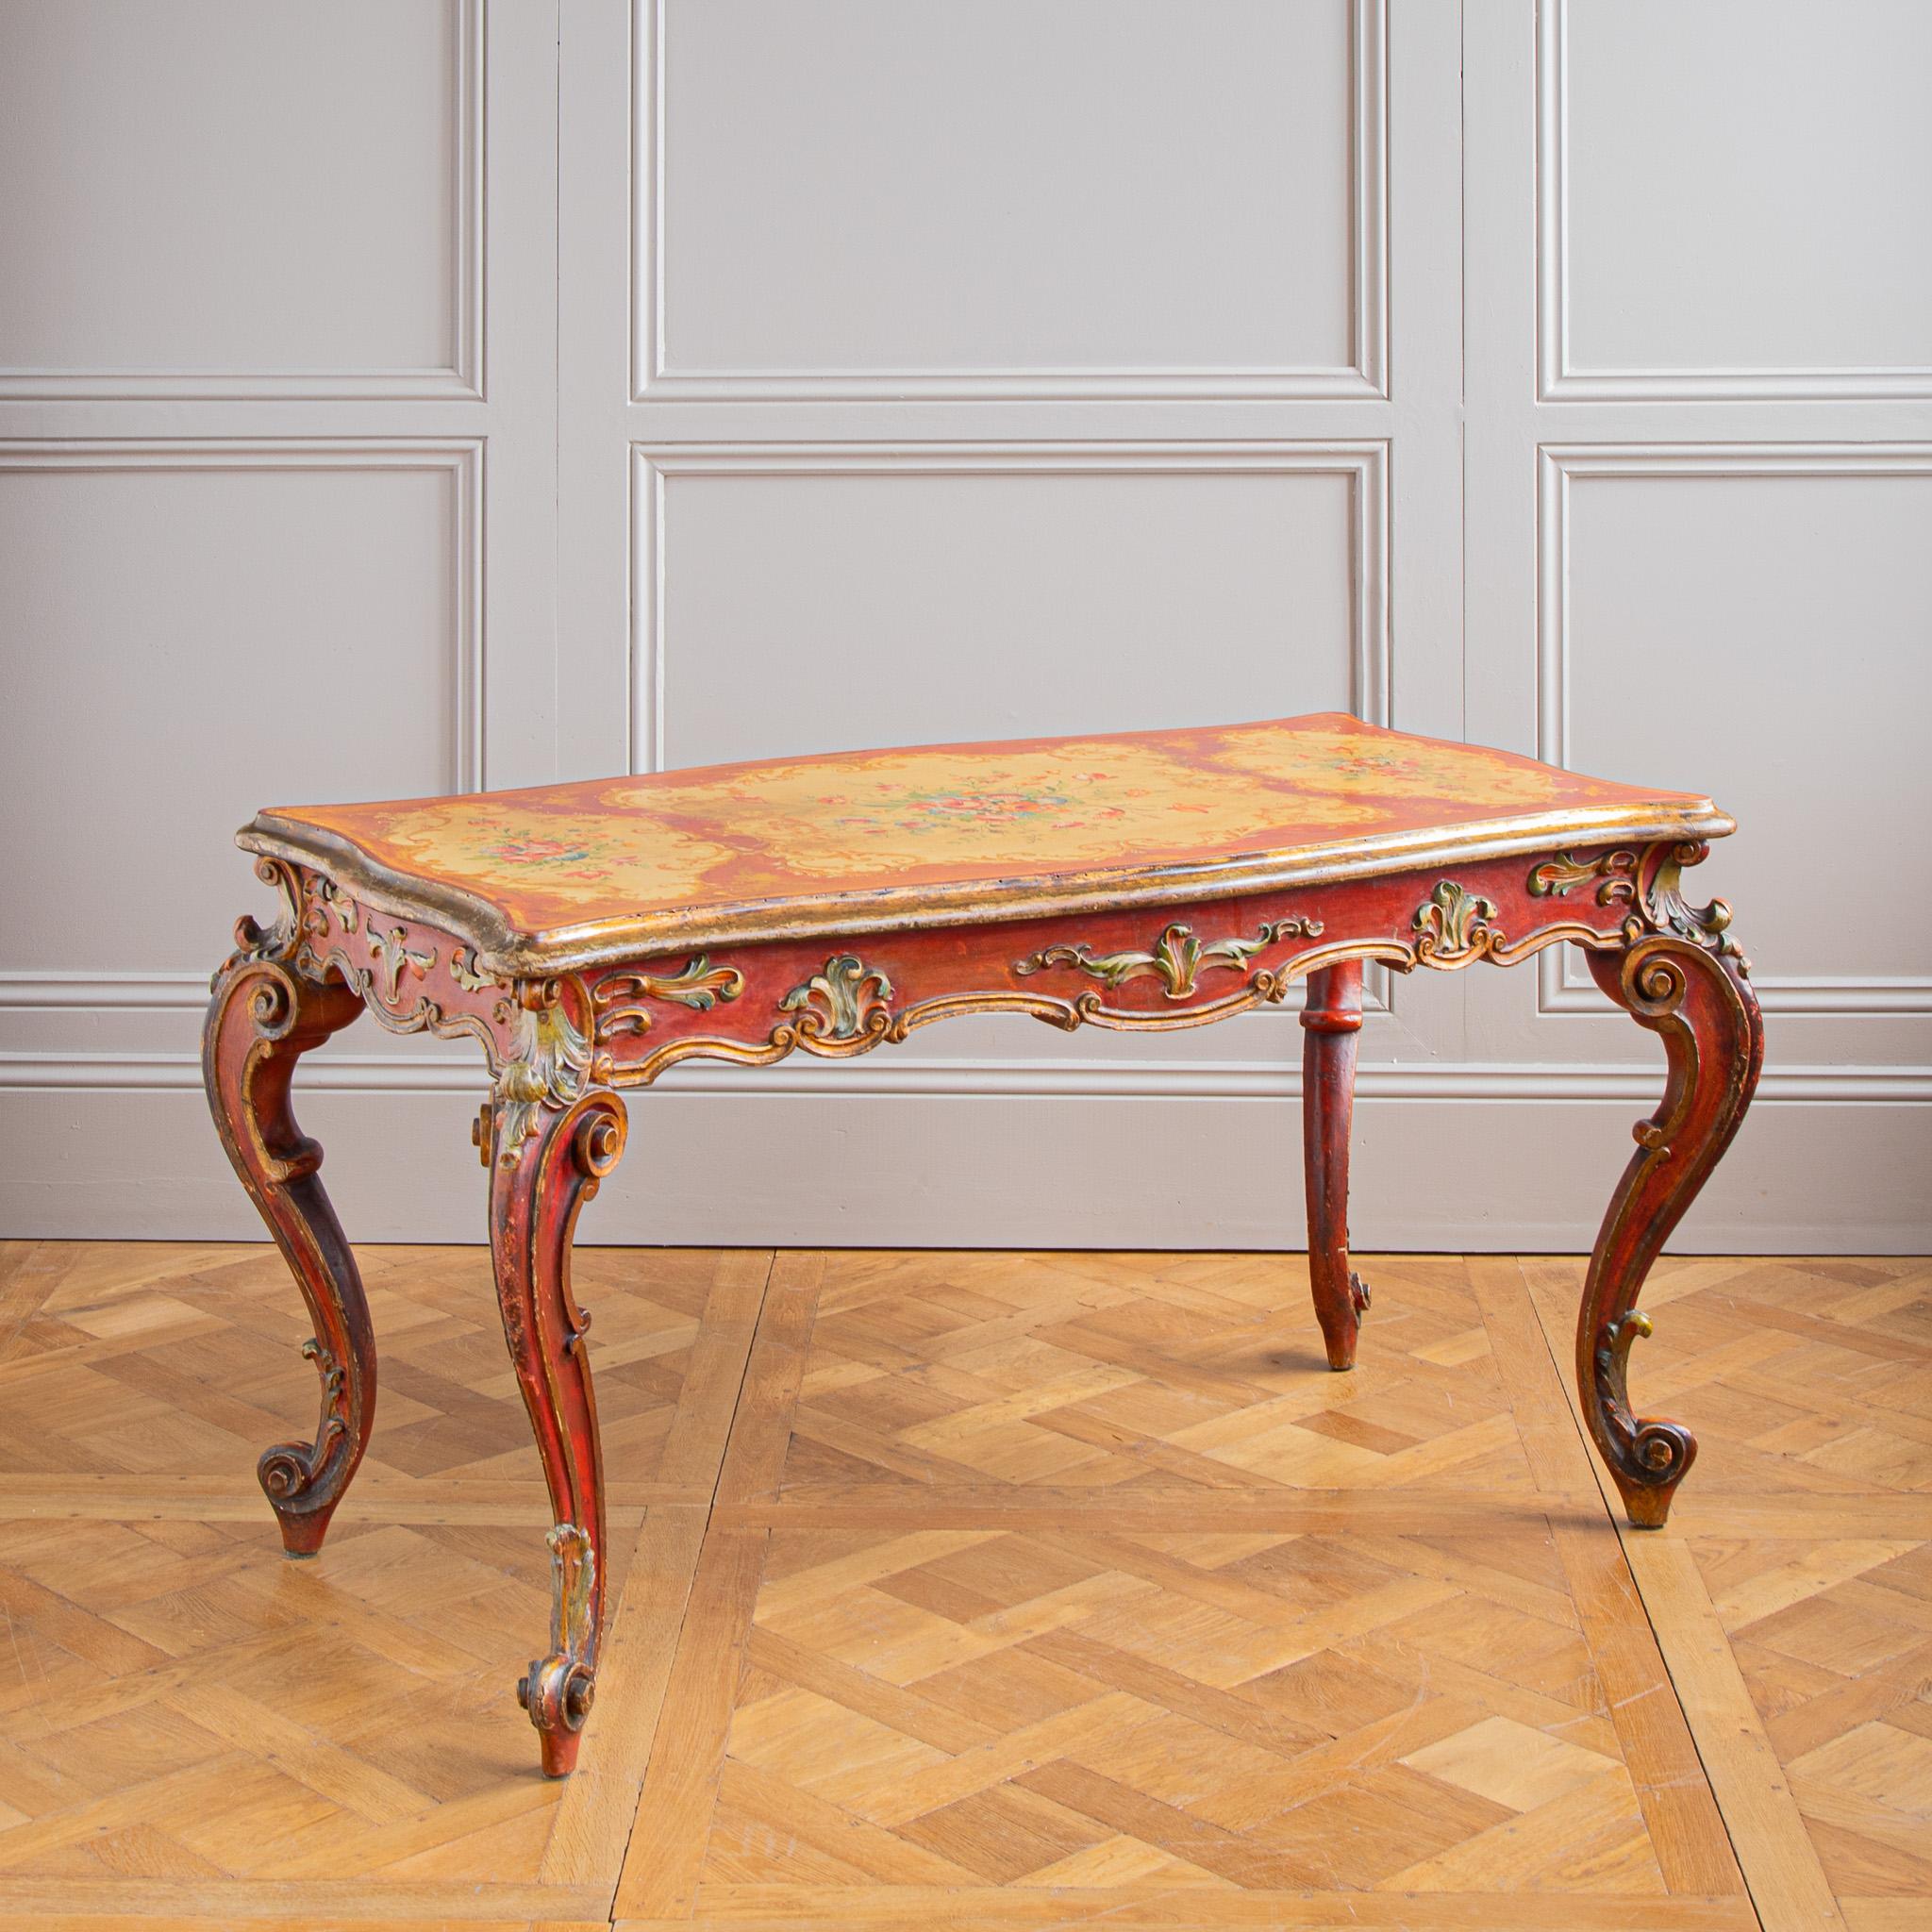 Table de la fin du XIXe siècle de style rococo, peinte à la main dans le style vénitien. Cette table italienne, qui peut également servir de bureau, présente des volutes finement sculptées à la main sur les pieds cabriole. Le tablier de la table